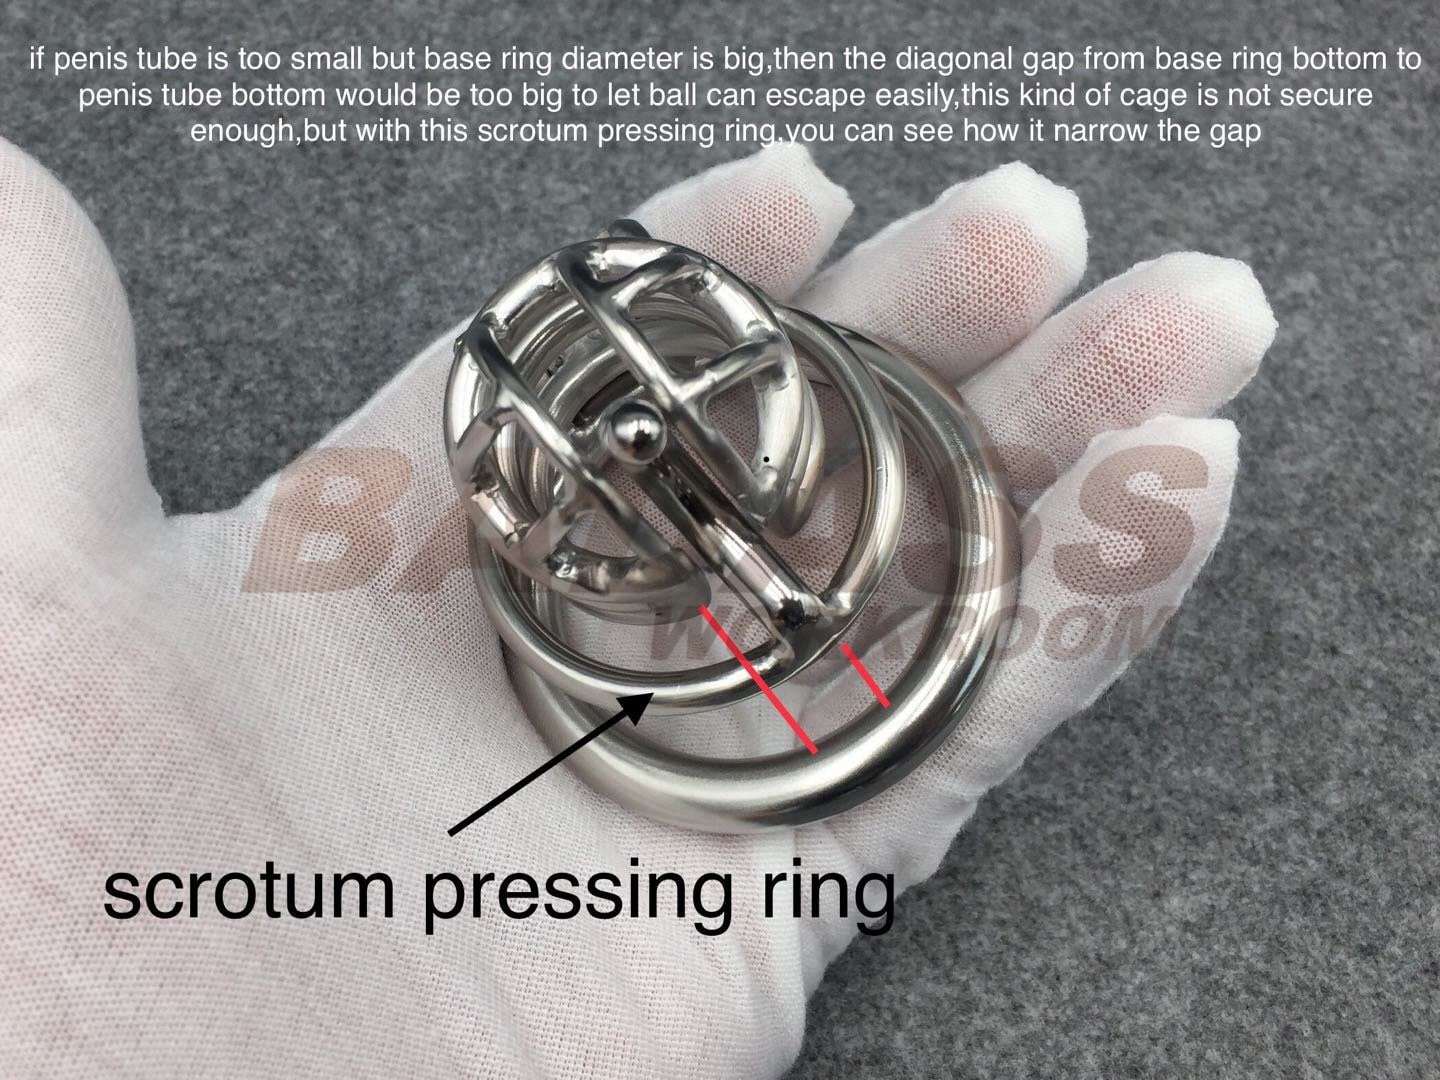 Personalice la jaula de castidad de acero inoxidable / titanio BA-08 con  anillo de base con bisagras -  España